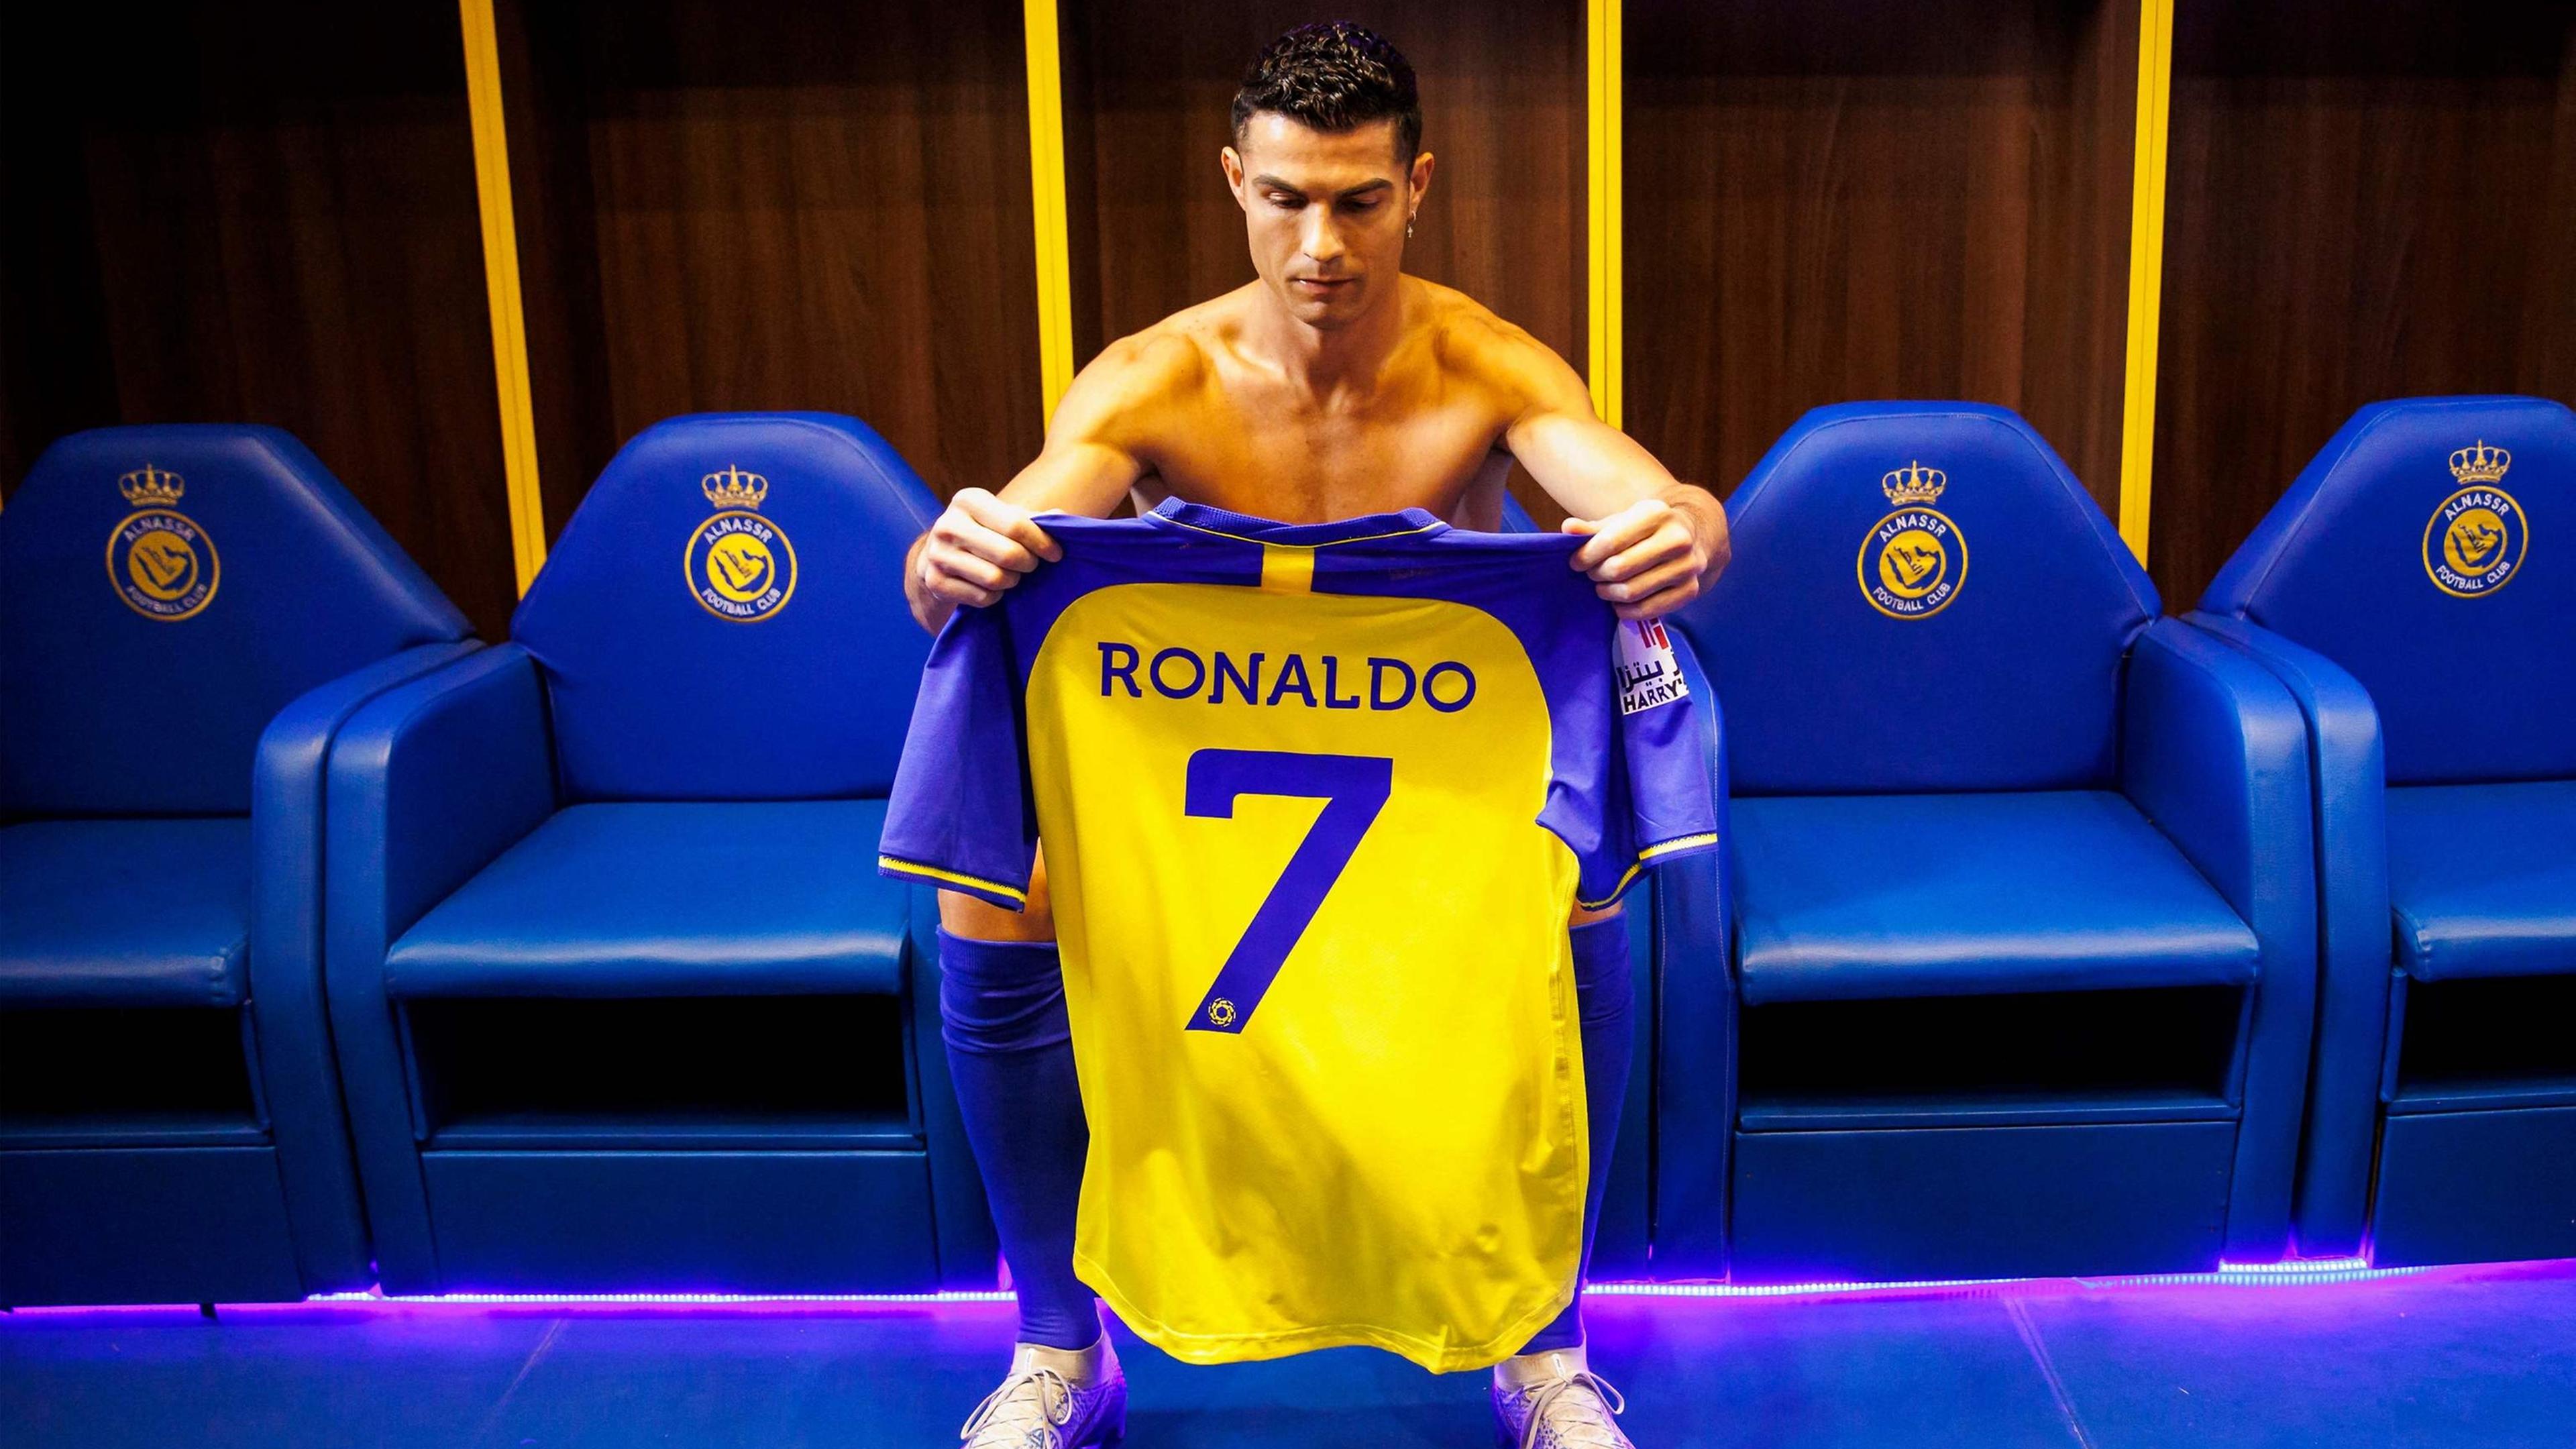 O efeito Cristiano Ronaldo. O Al-Nassr agora tem mais seguidores